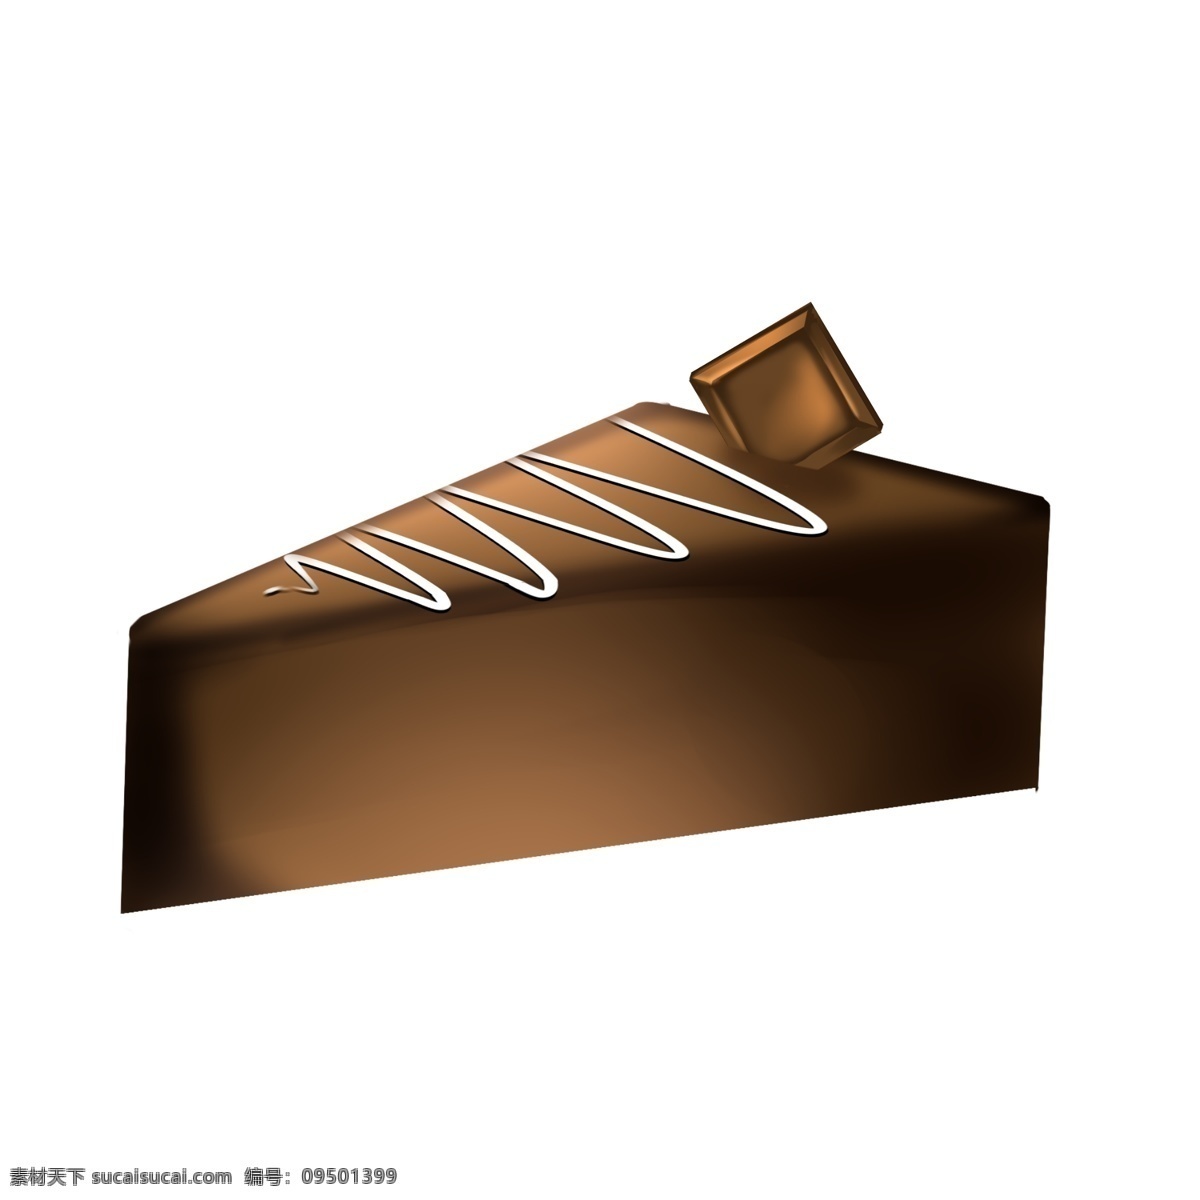 美味 巧克力 蛋糕 插画 巧克力蛋糕 甜点 烘烤 面包房 早餐 烘焙 三角 糕点